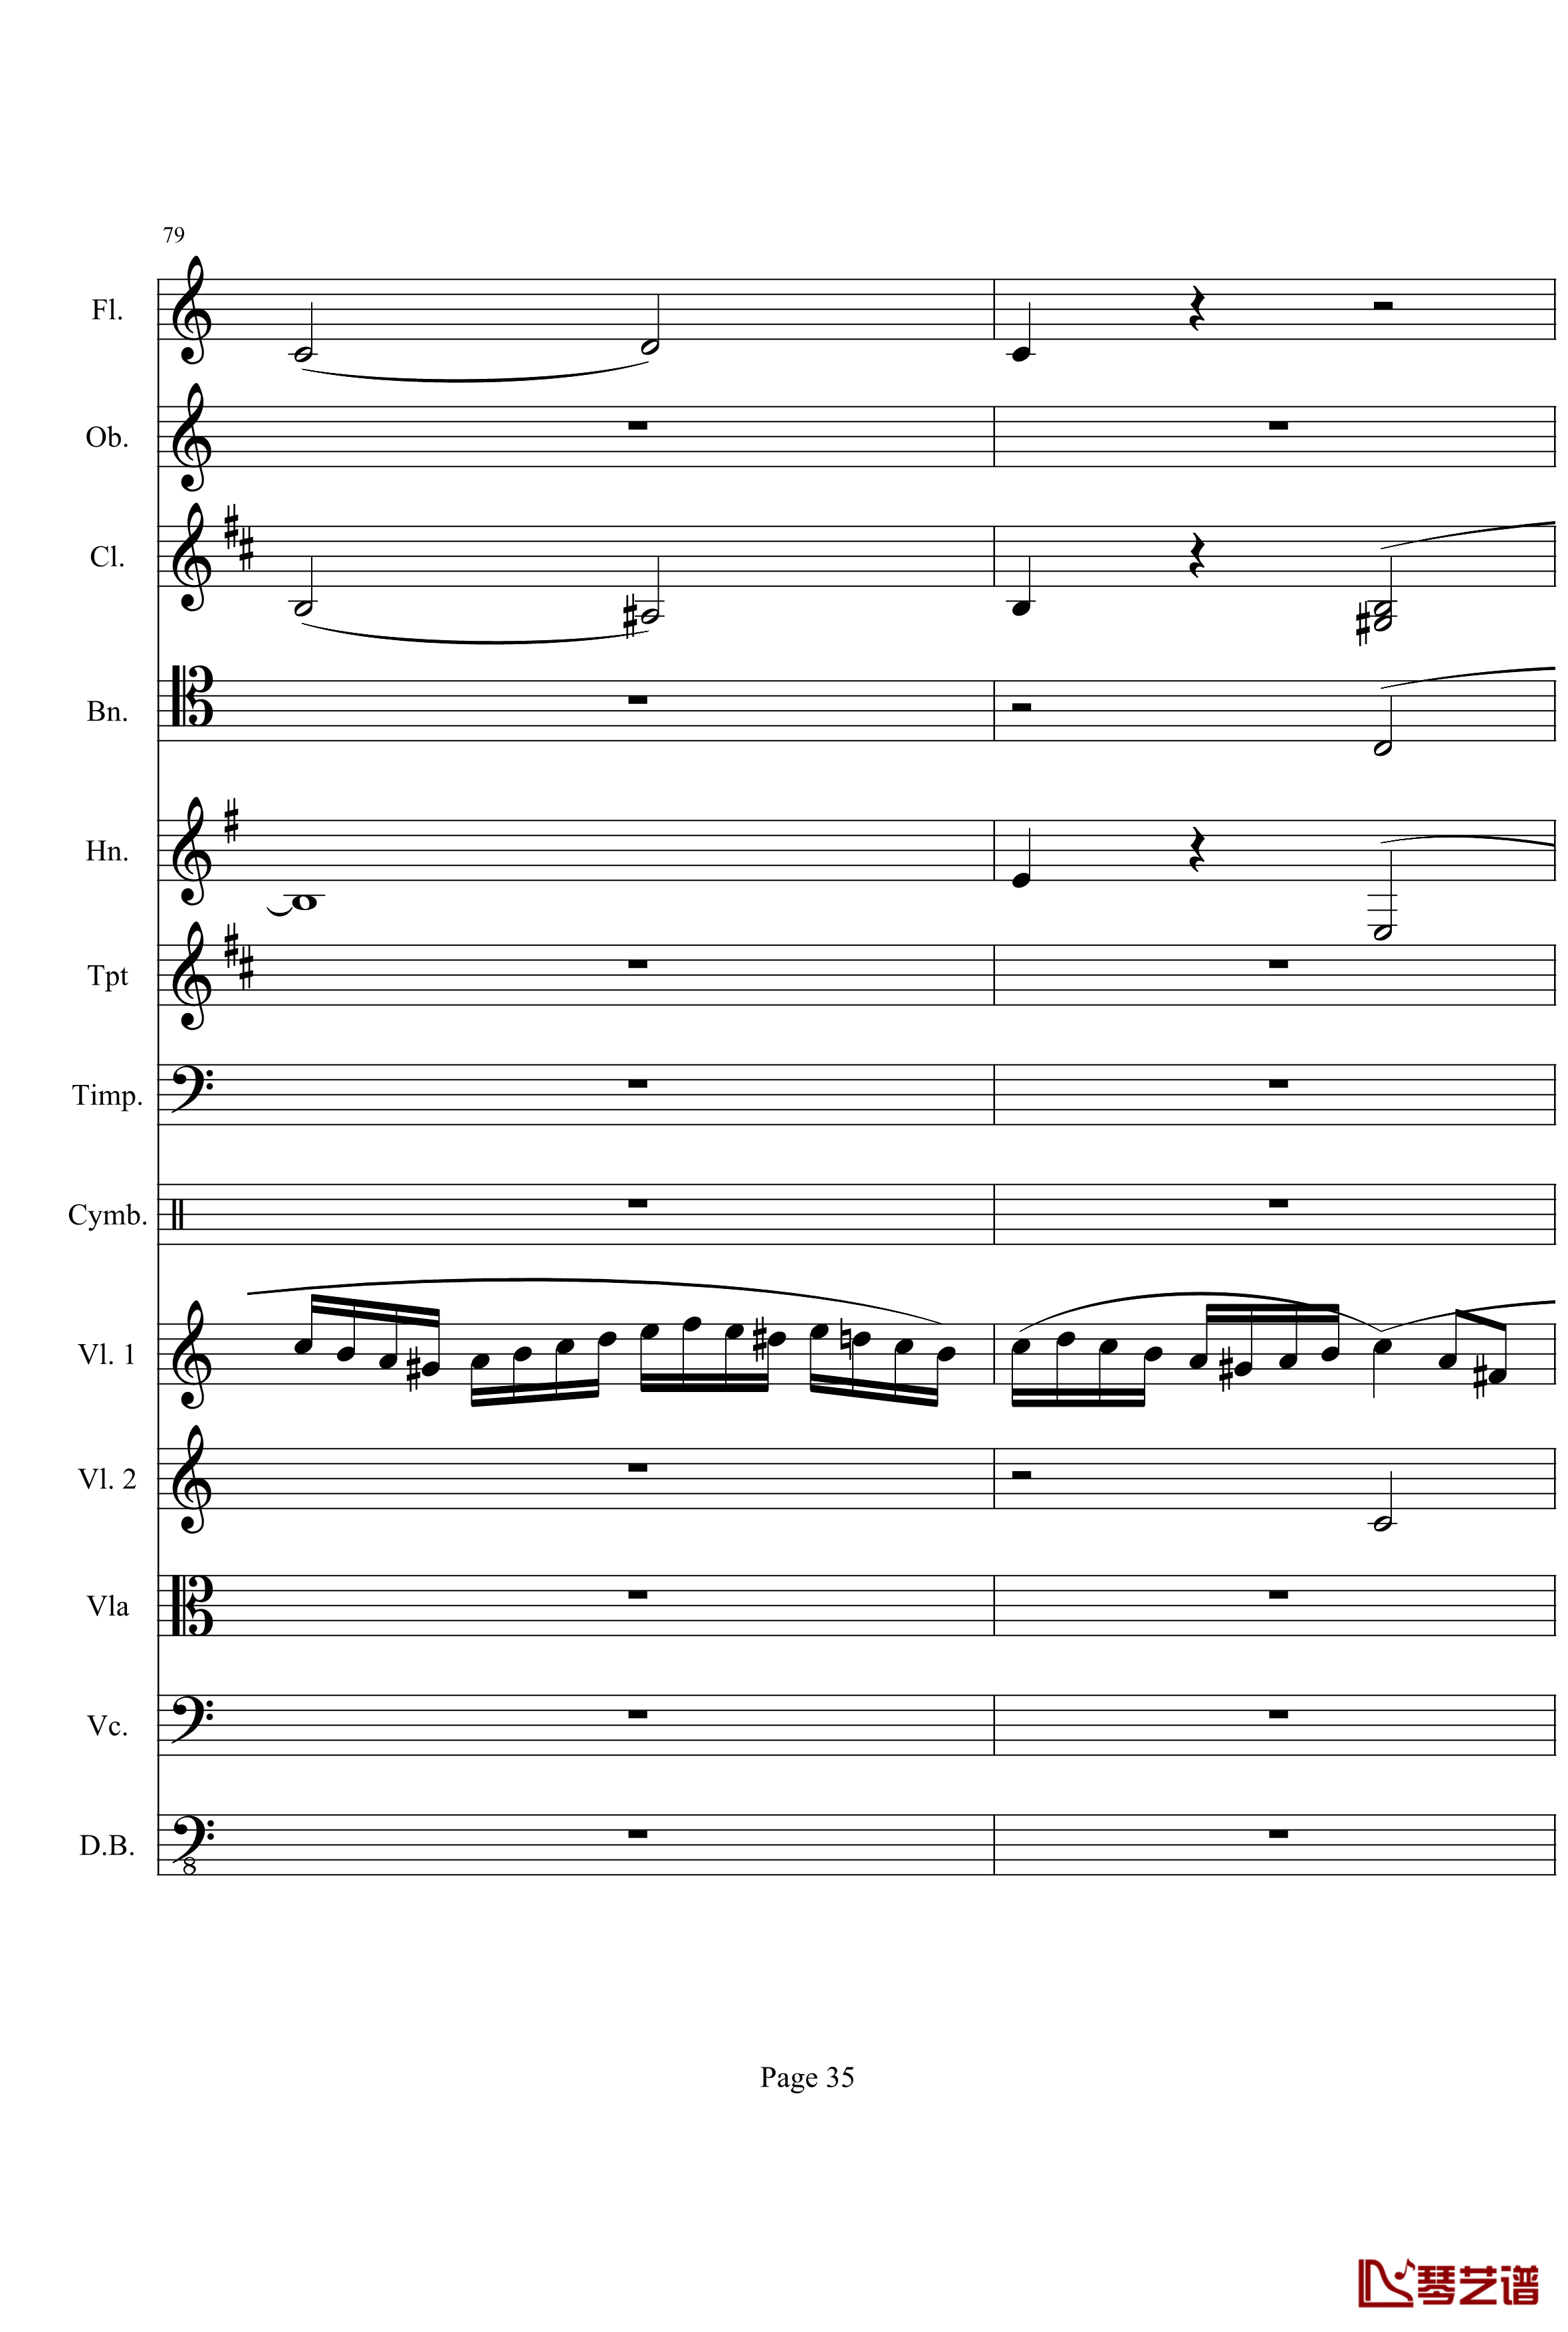 奏鸣曲之交响钢琴谱-第21-Ⅰ-贝多芬-beethoven35